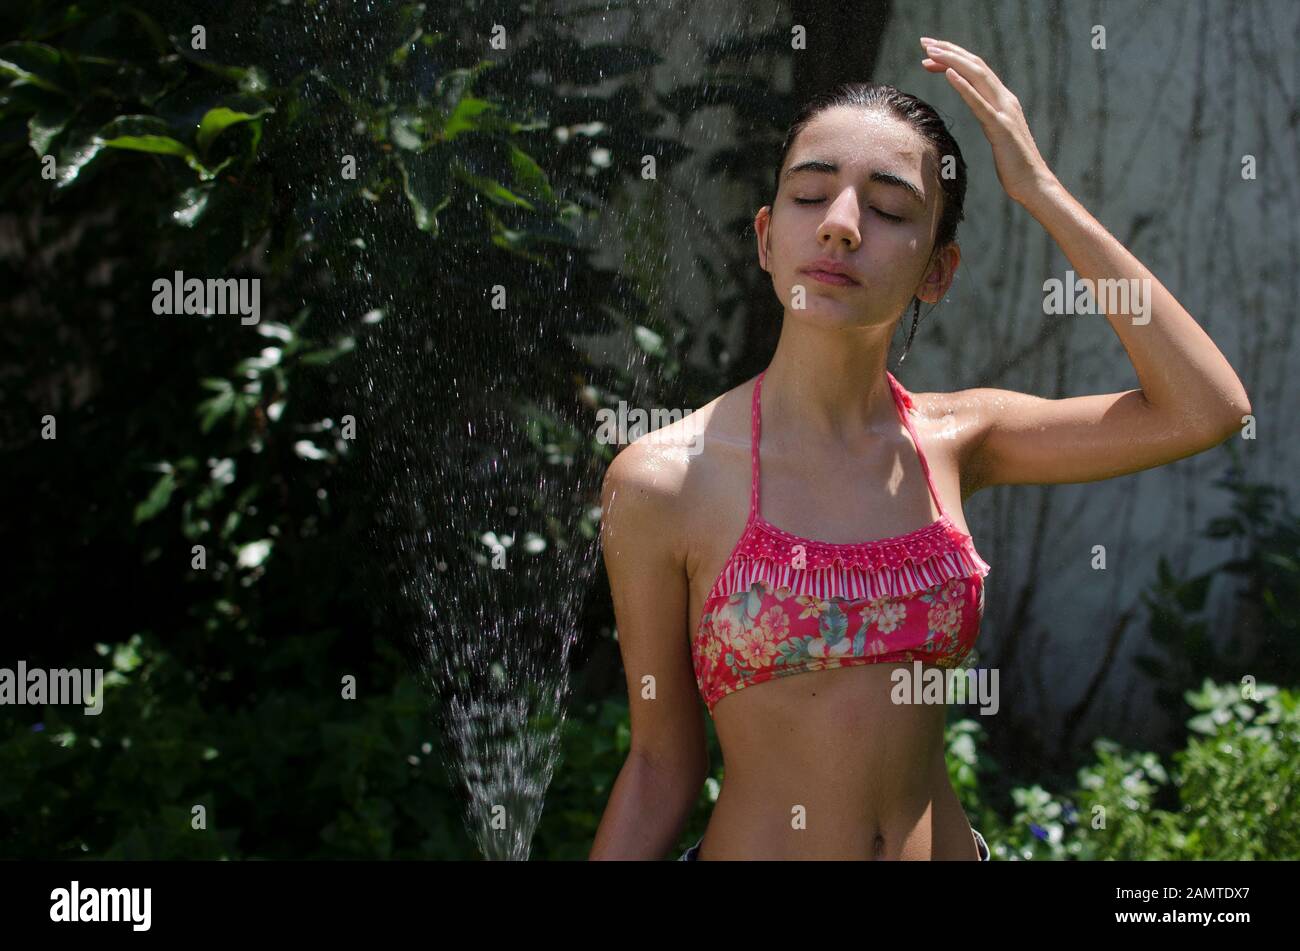 Teenager-Mädchen, das in einem Garten steht und sich mit einem Wasserschlauch abkühlt, Argentinien Stockfoto